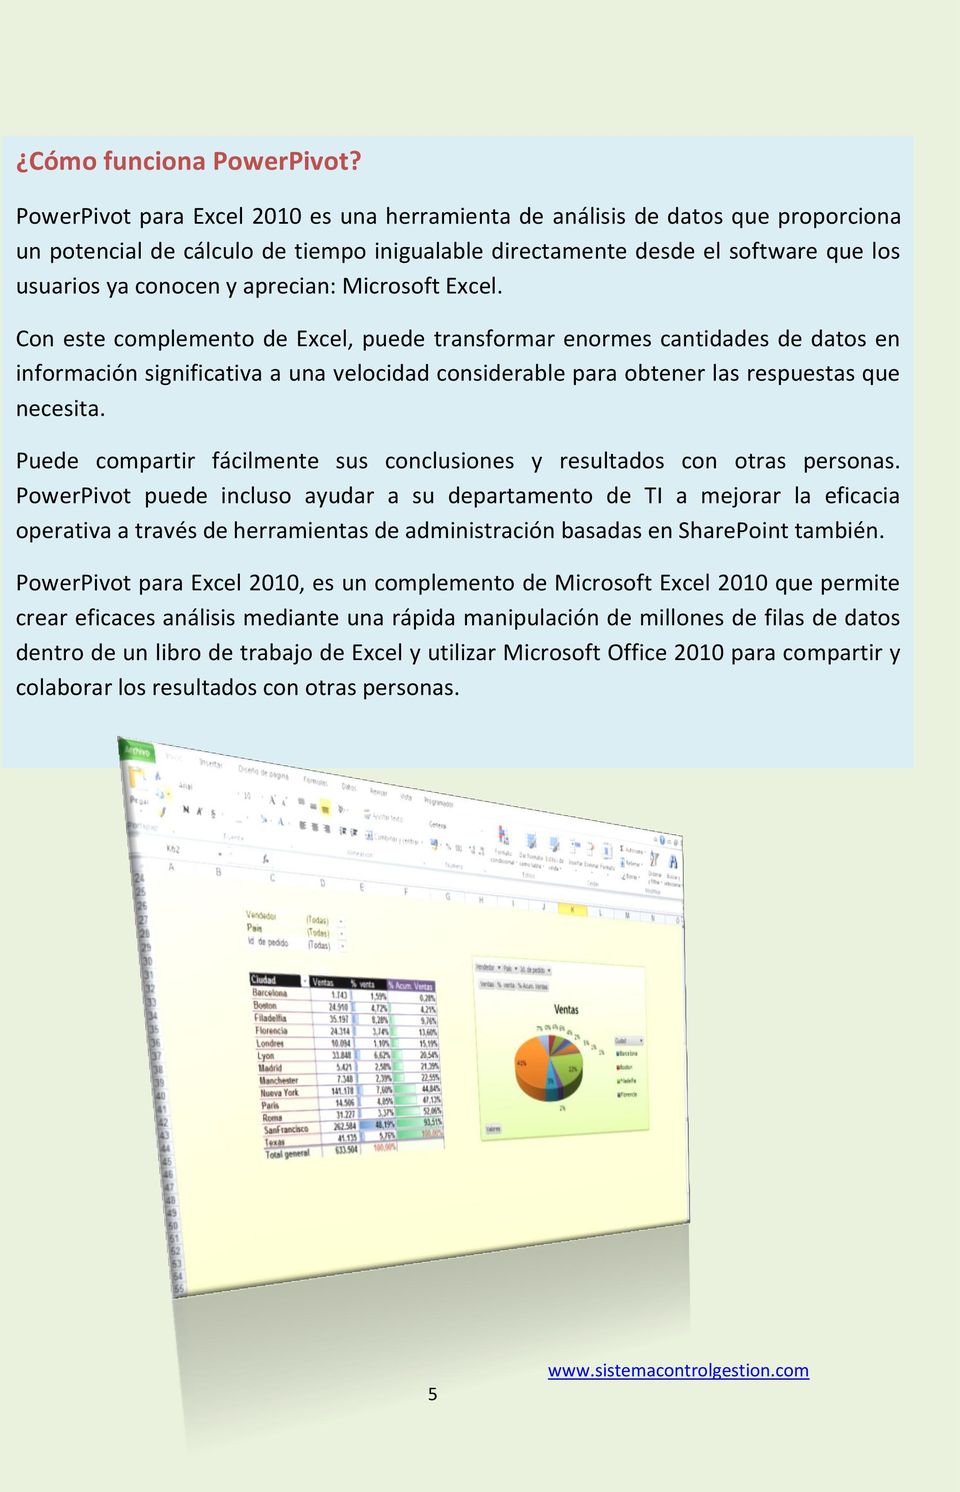 Microsoft Excel. Con este complemento de Excel, puede transformar enormes cantidades de datos en información significativa a una velocidad considerable para obtener las respuestas que necesita.